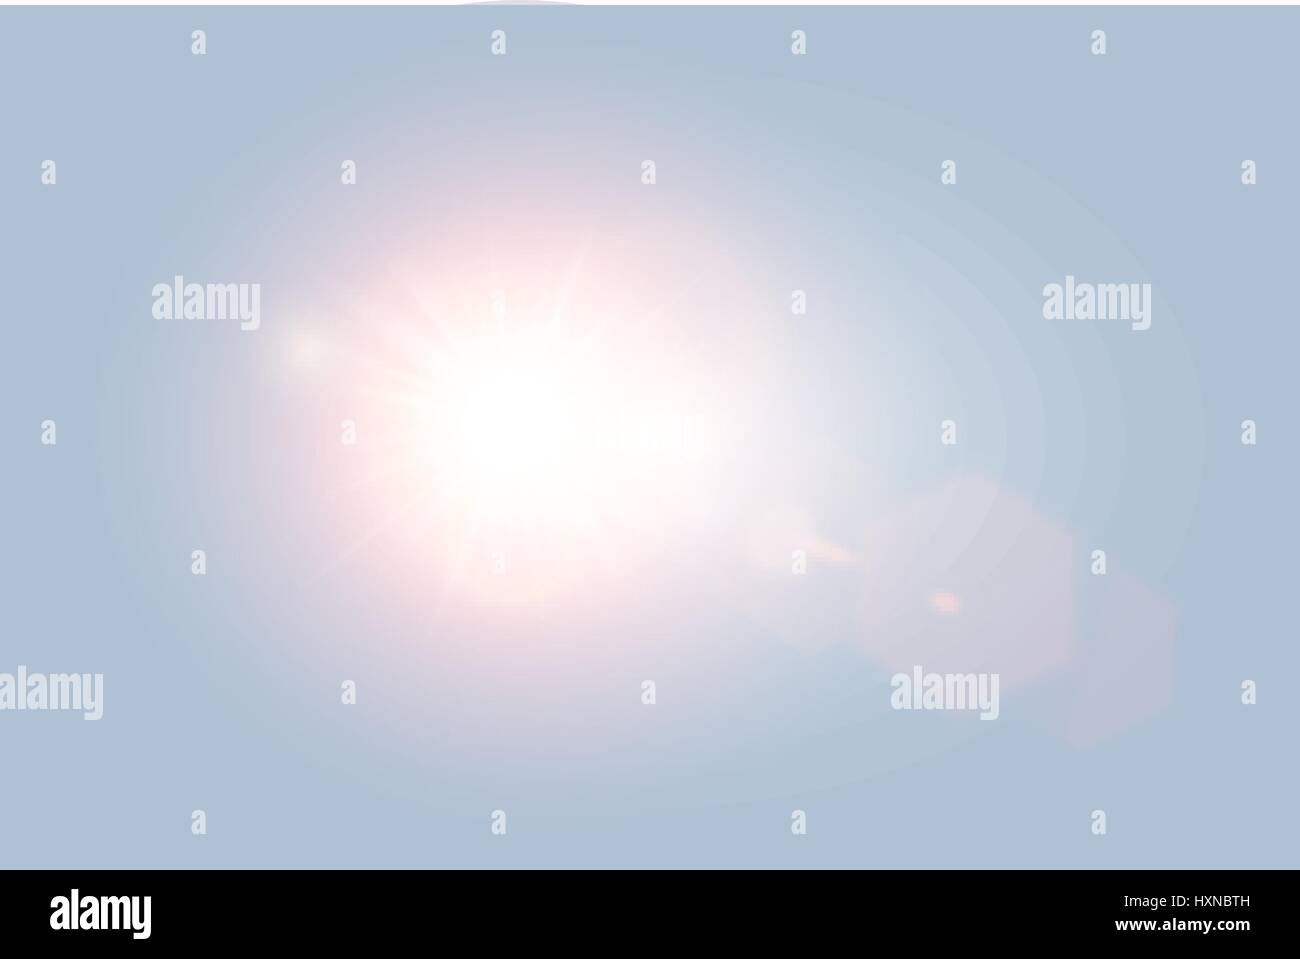 Jour du soleil lumineux transparent vecteur lens flare avec éléments hexagonal sur fond bleu clair. Sunrice ou le coucher du soleil, éclatement d'étoile. Illustration de Vecteur